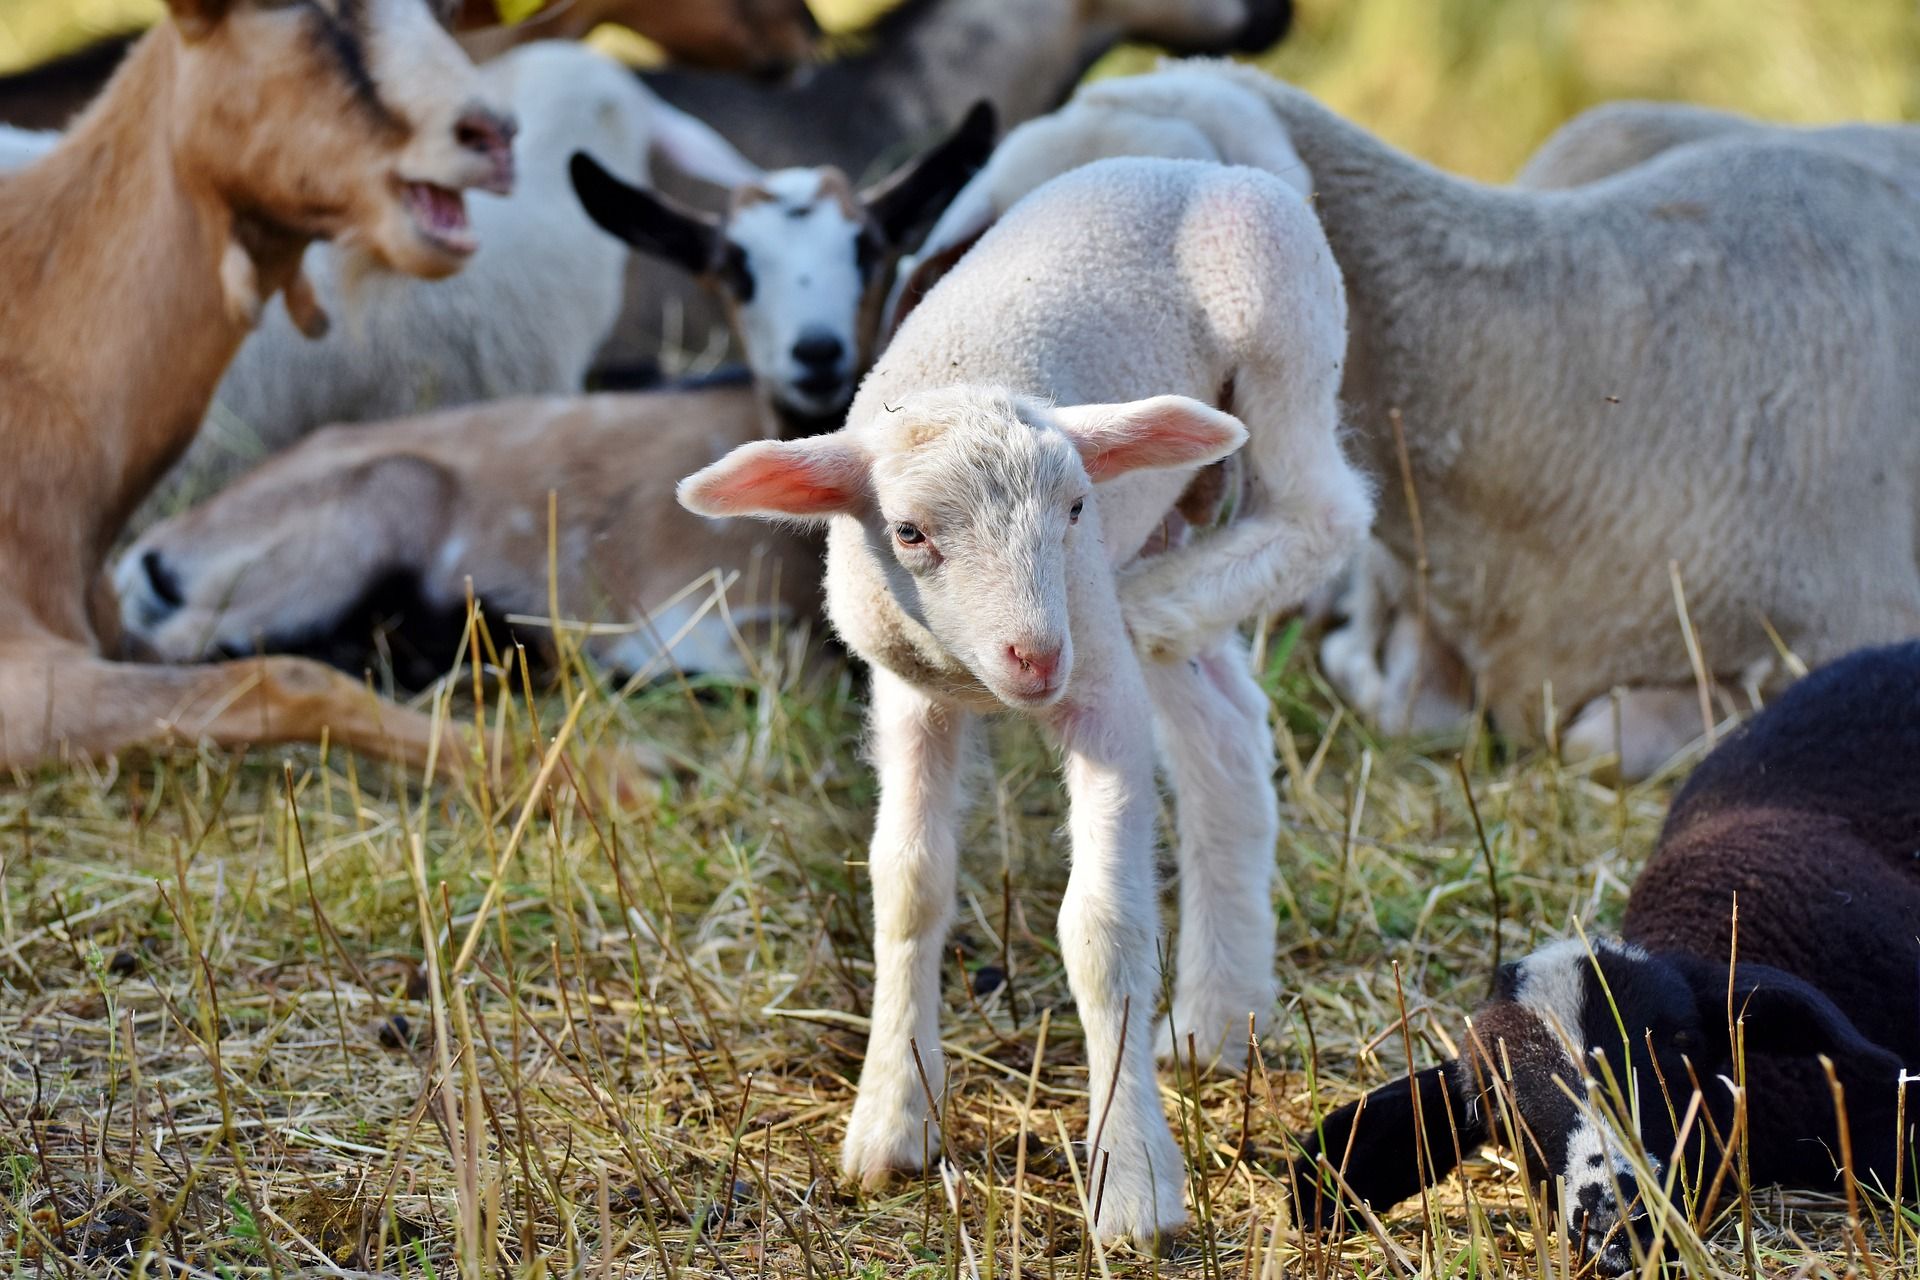 Lambs on a farm